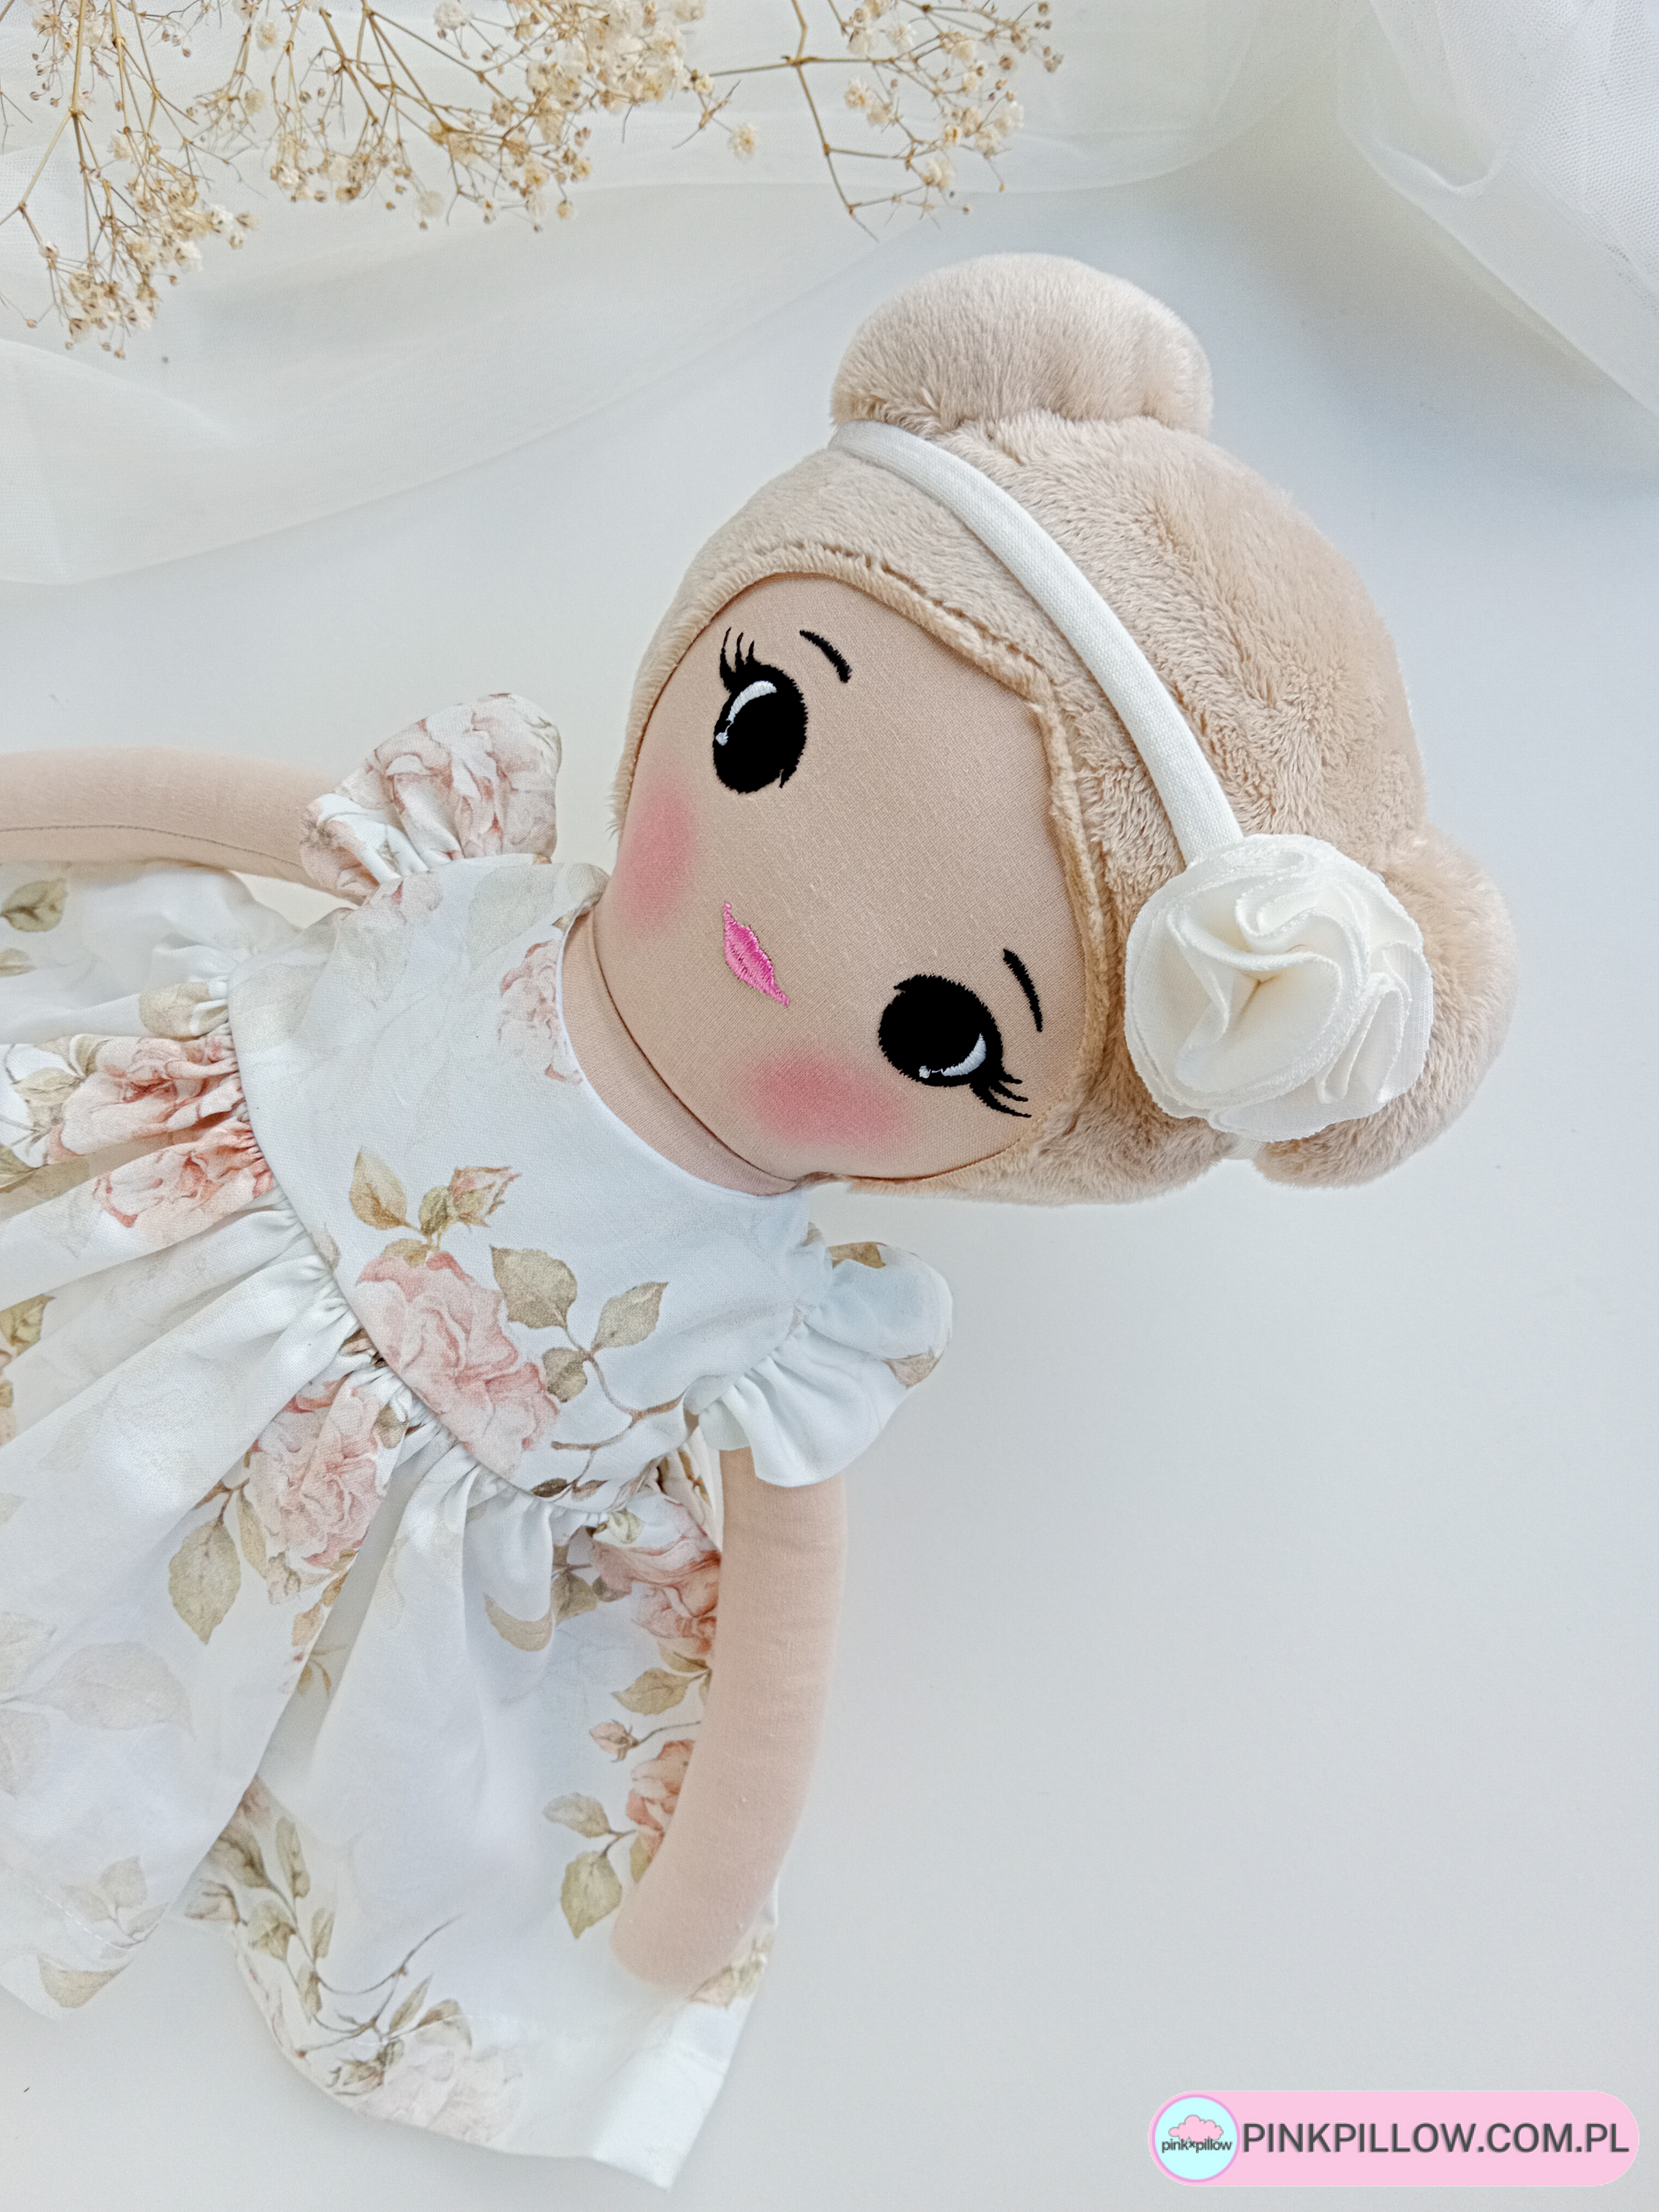 Personalizowana lalka szmaciana “Boho Rose” - Z bliska